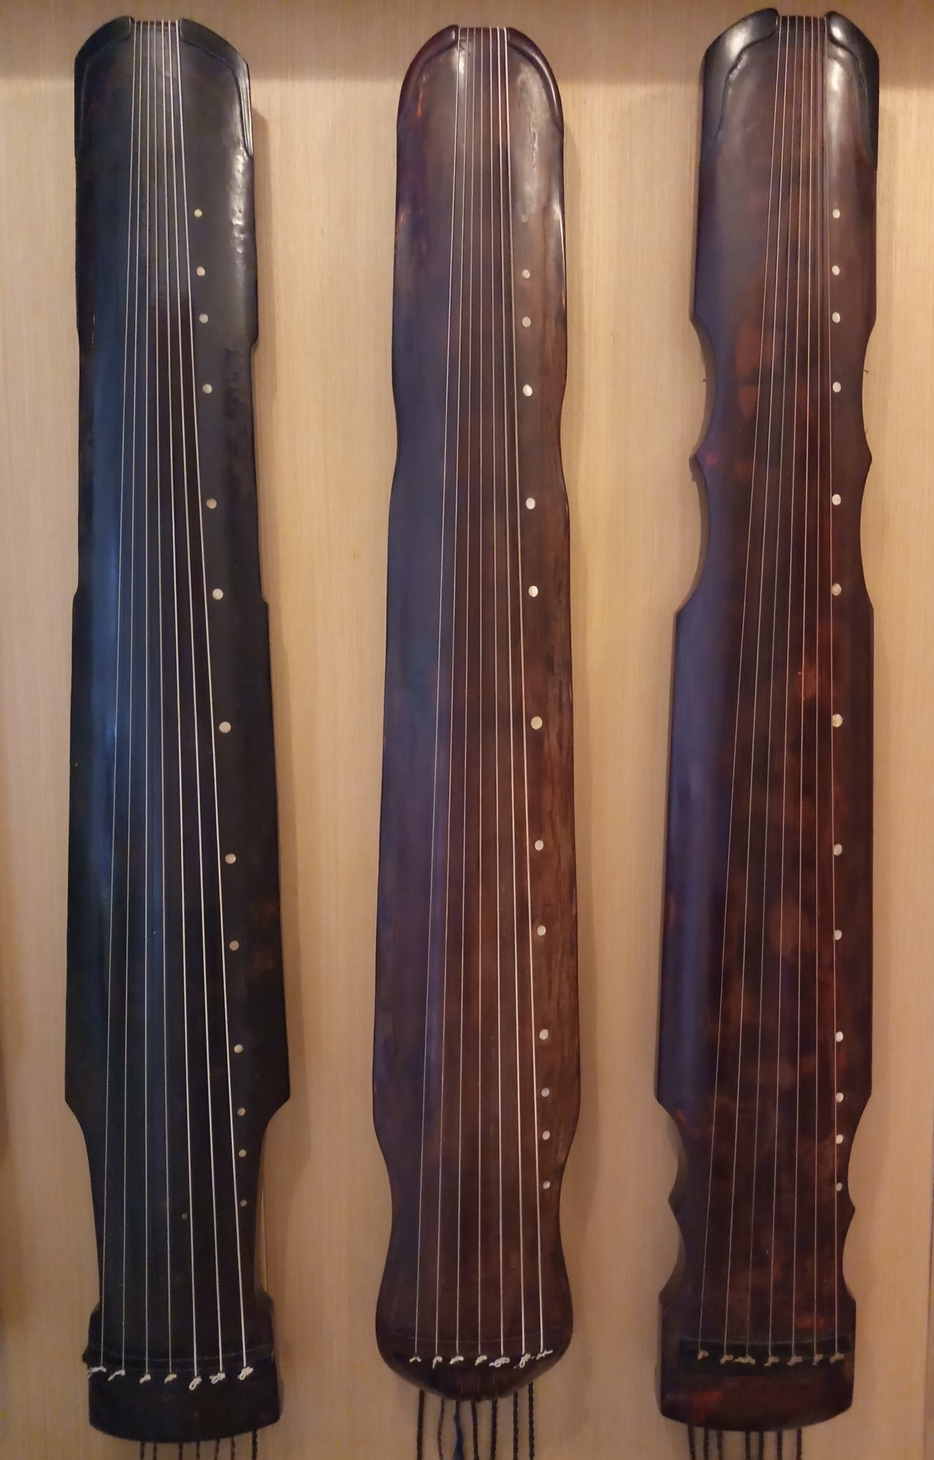 古琴款式 (左起)：仲尼式、蕉葉式、鳳勢式